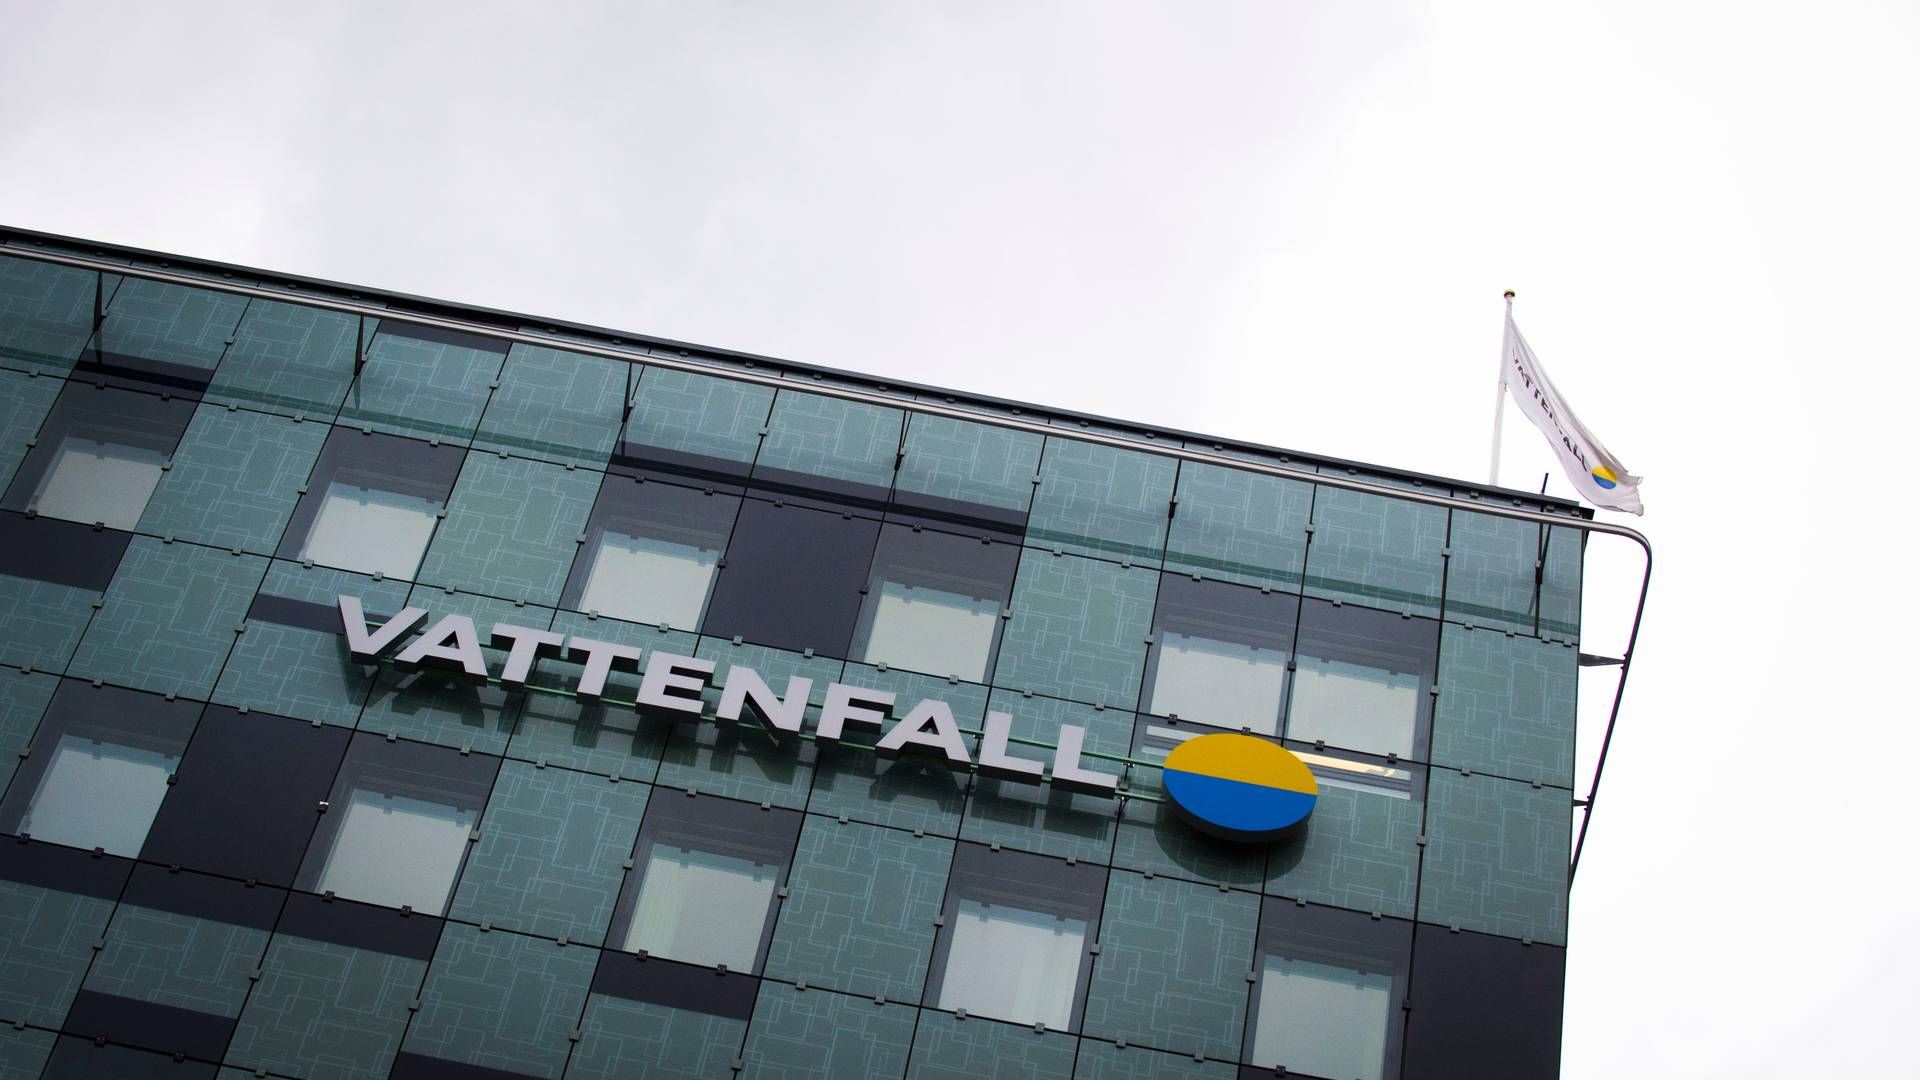 VATTENFALL SVARER: SVT.se skrev at Vattenfall har fått priser på kjernekraft på mellom 90-112 øre/kWh. Det svenske energiselskapet sier de ikke vil offentliggjøre priser. | Foto: Hanna Franzén / TT